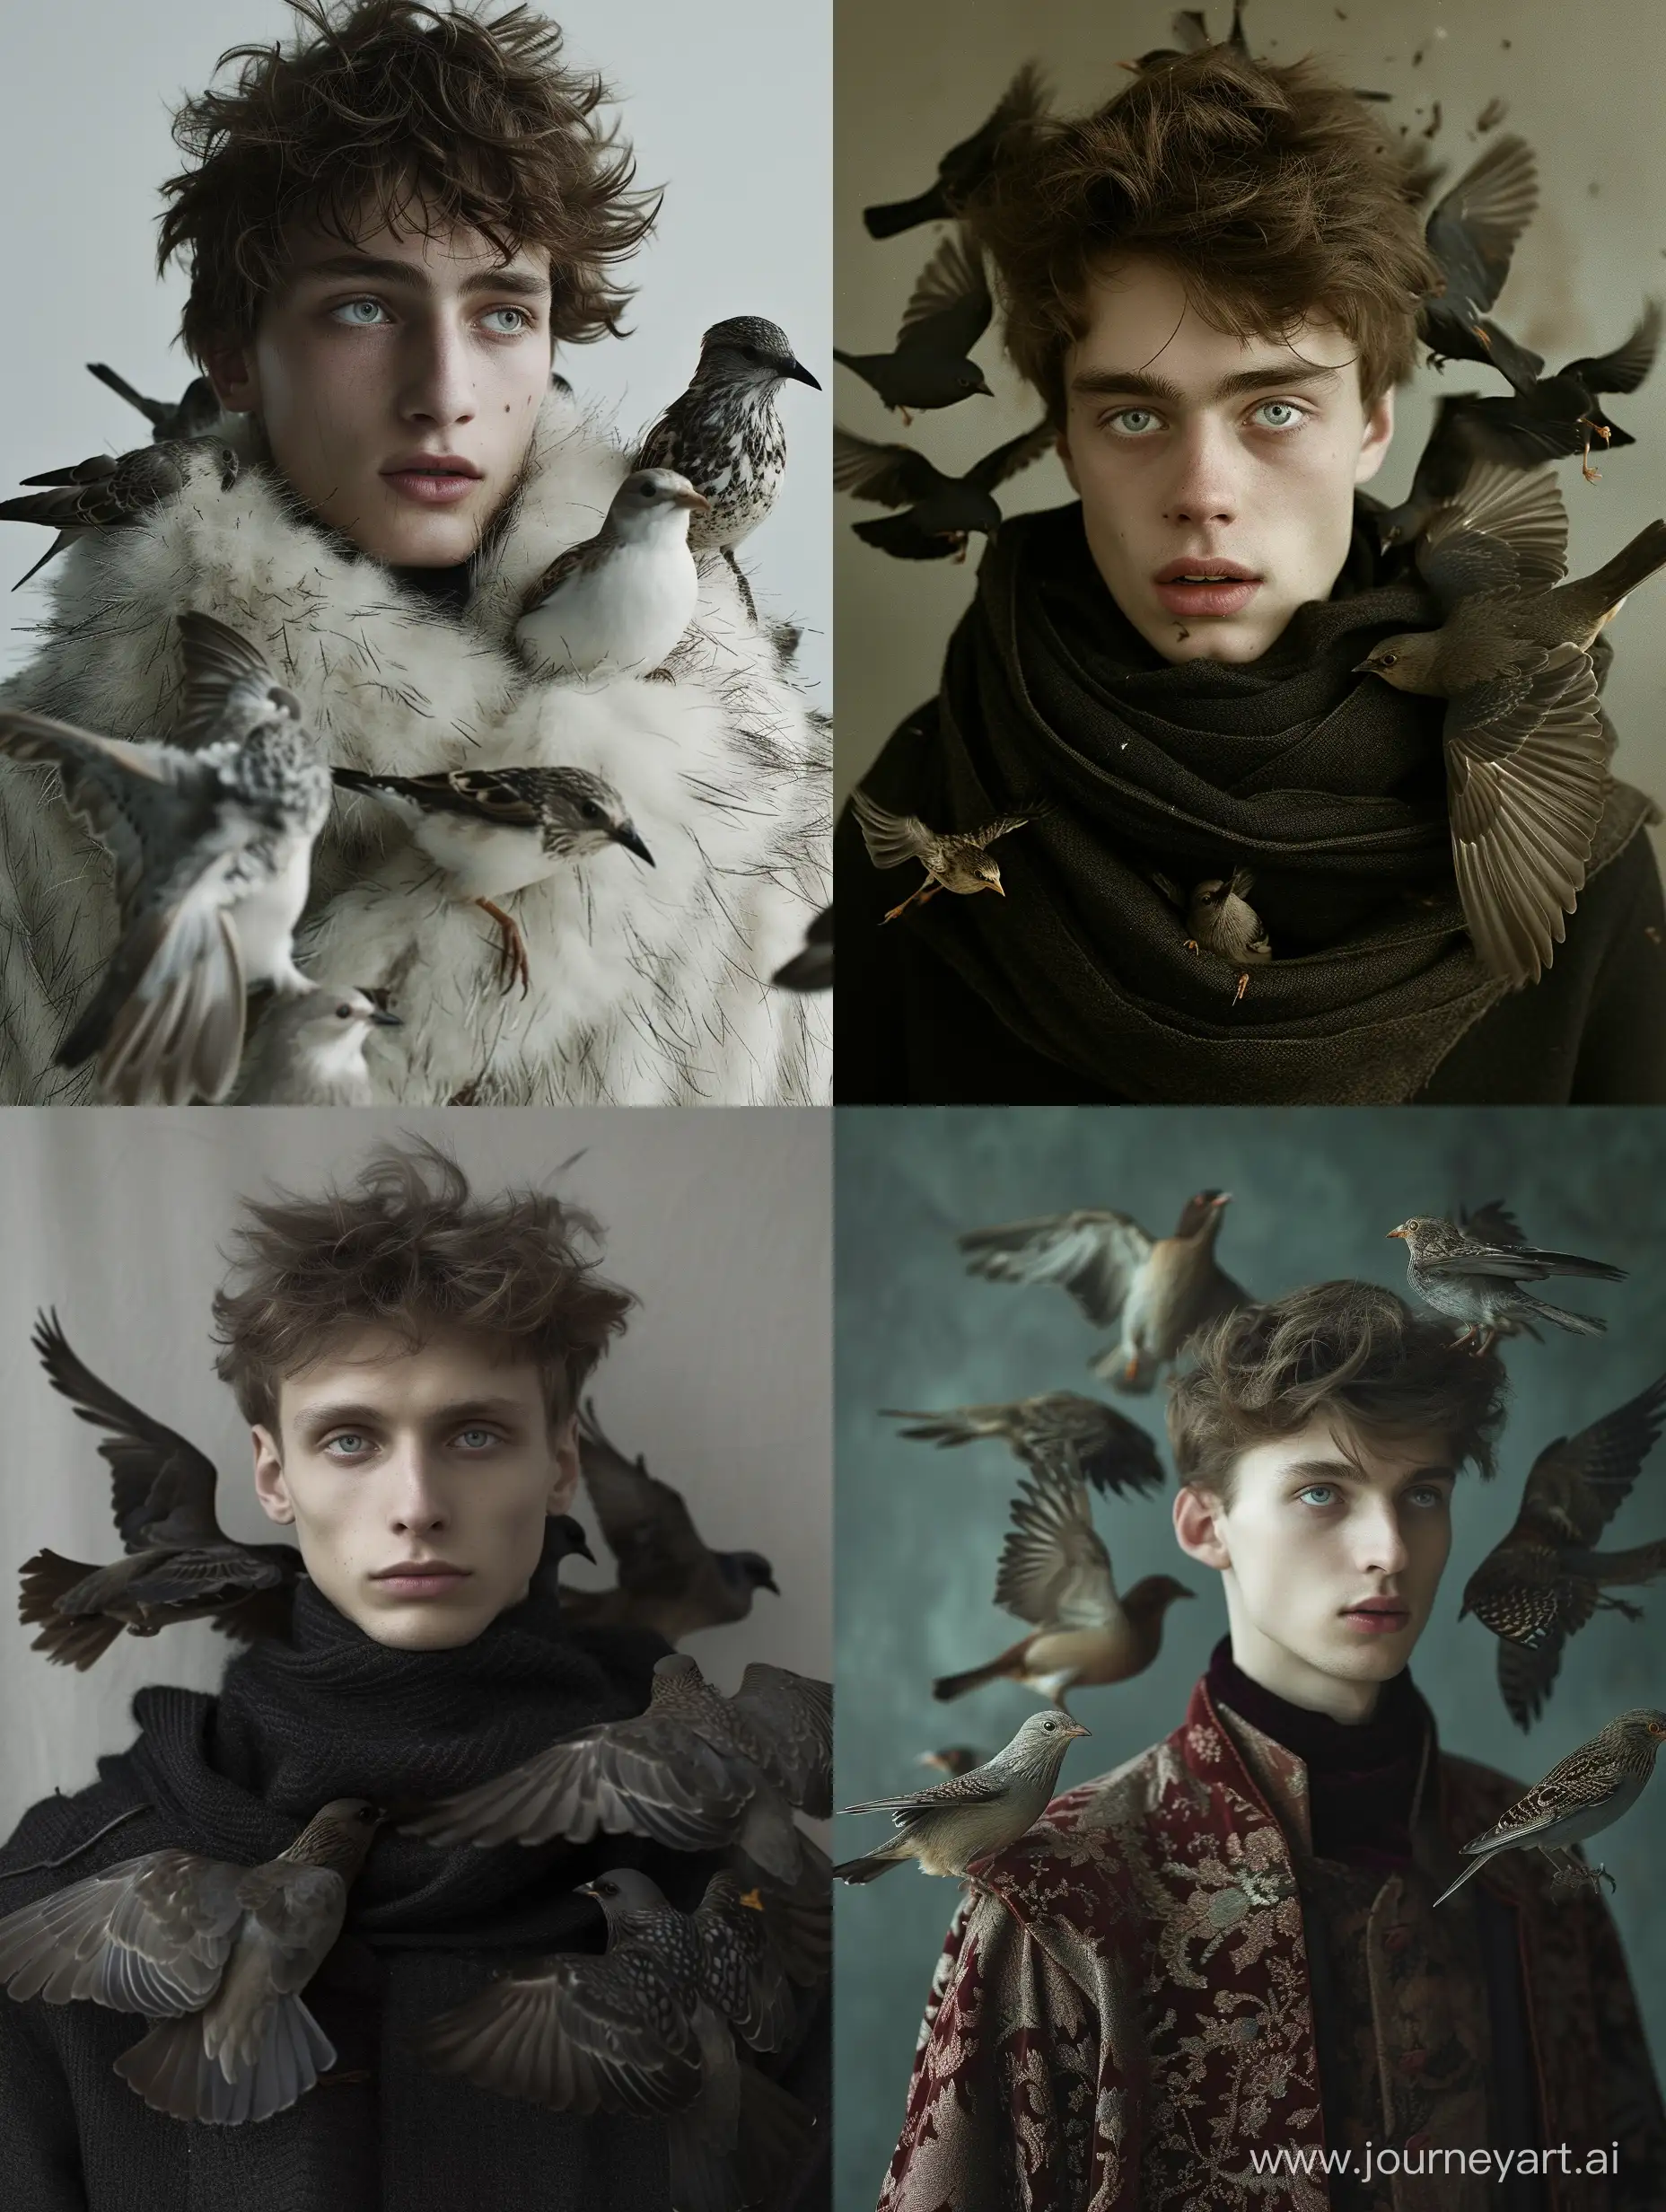 hyperrealistic photo a 20 y.o slavic guy with birds in fashion style Annie Leibovitz